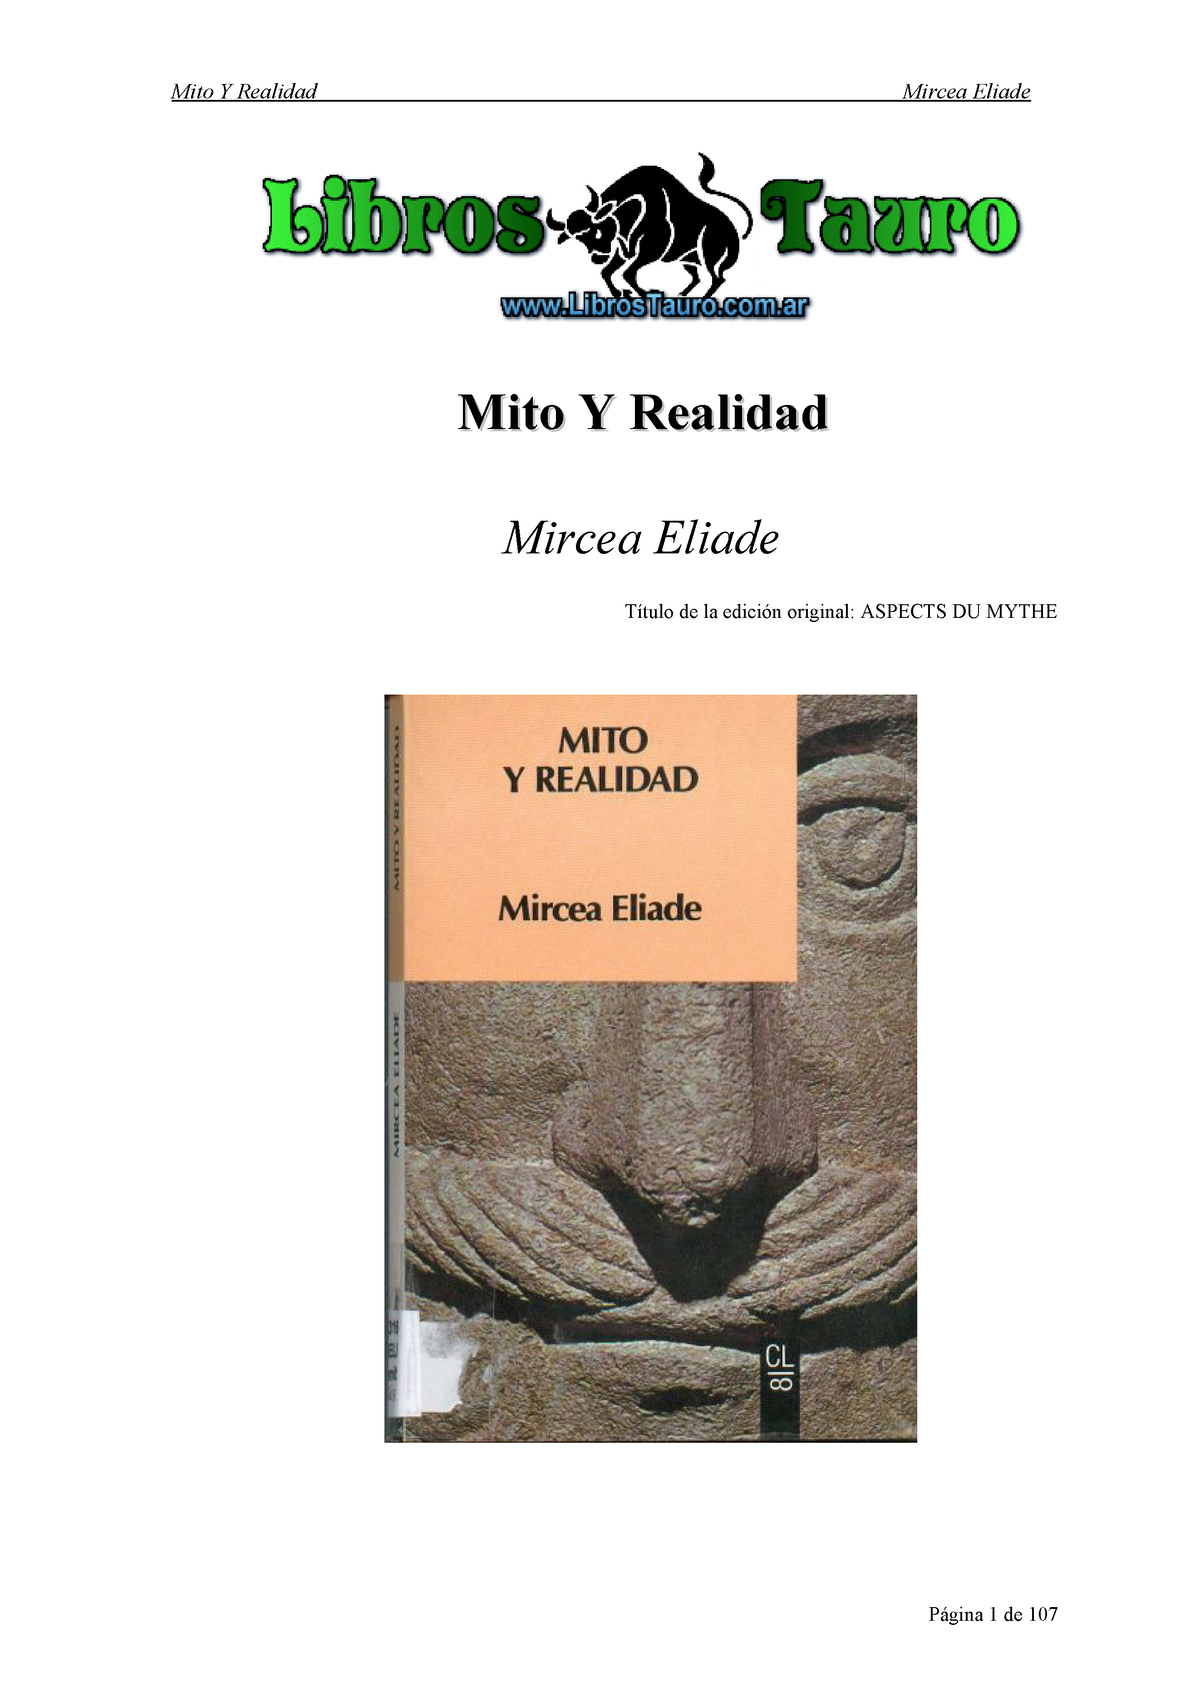 Eliade Mircea Mito Y Realidad Mito Y Realidadmito Y Realidad Mircea Eliade Título De La 4026